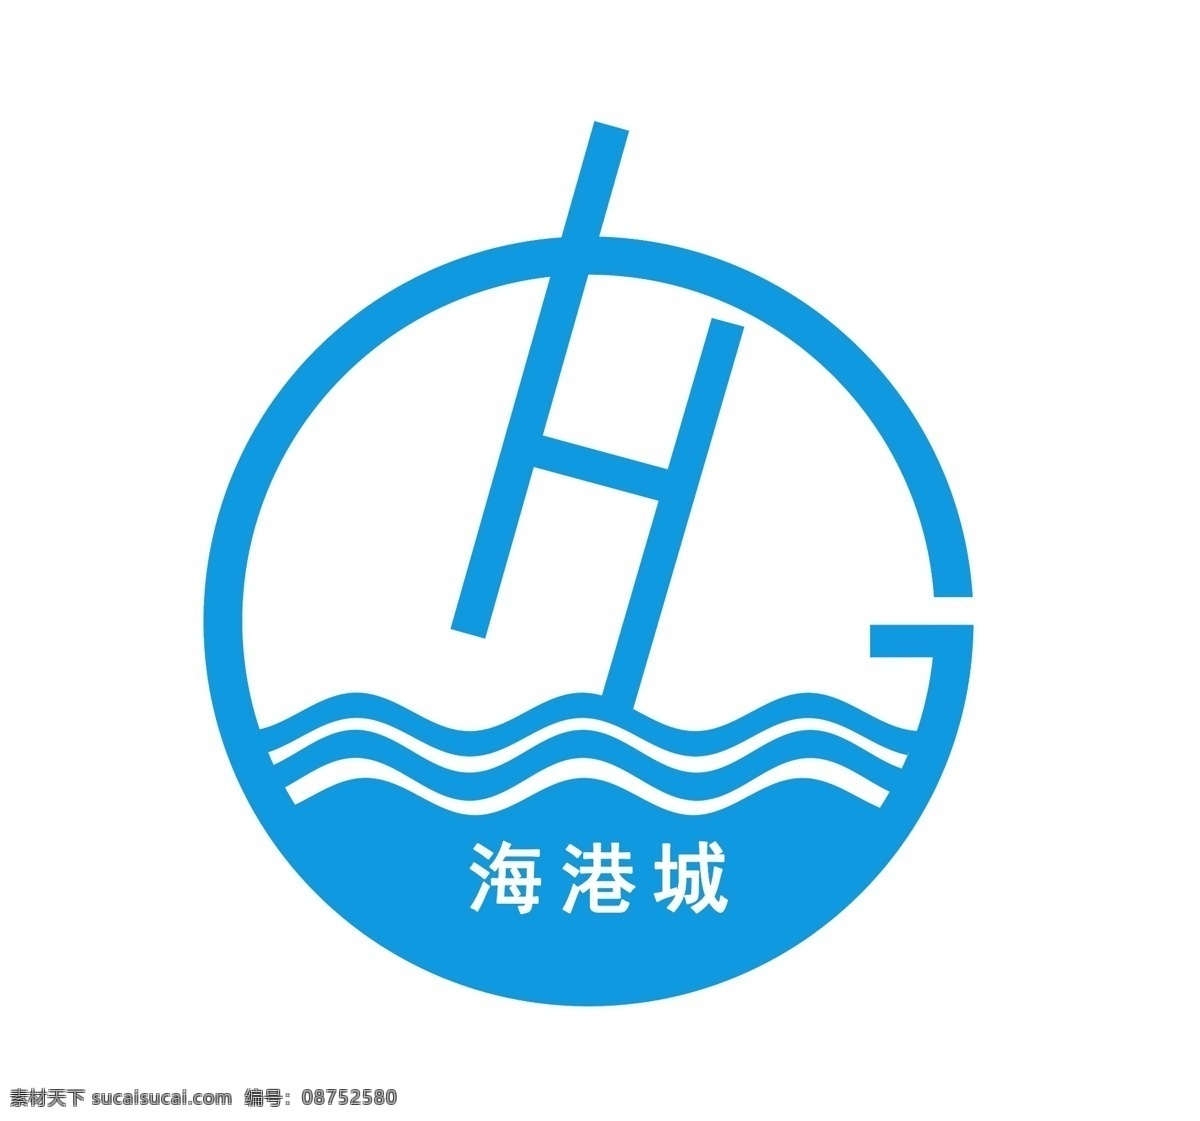 海港城 logo2 镂空 白色